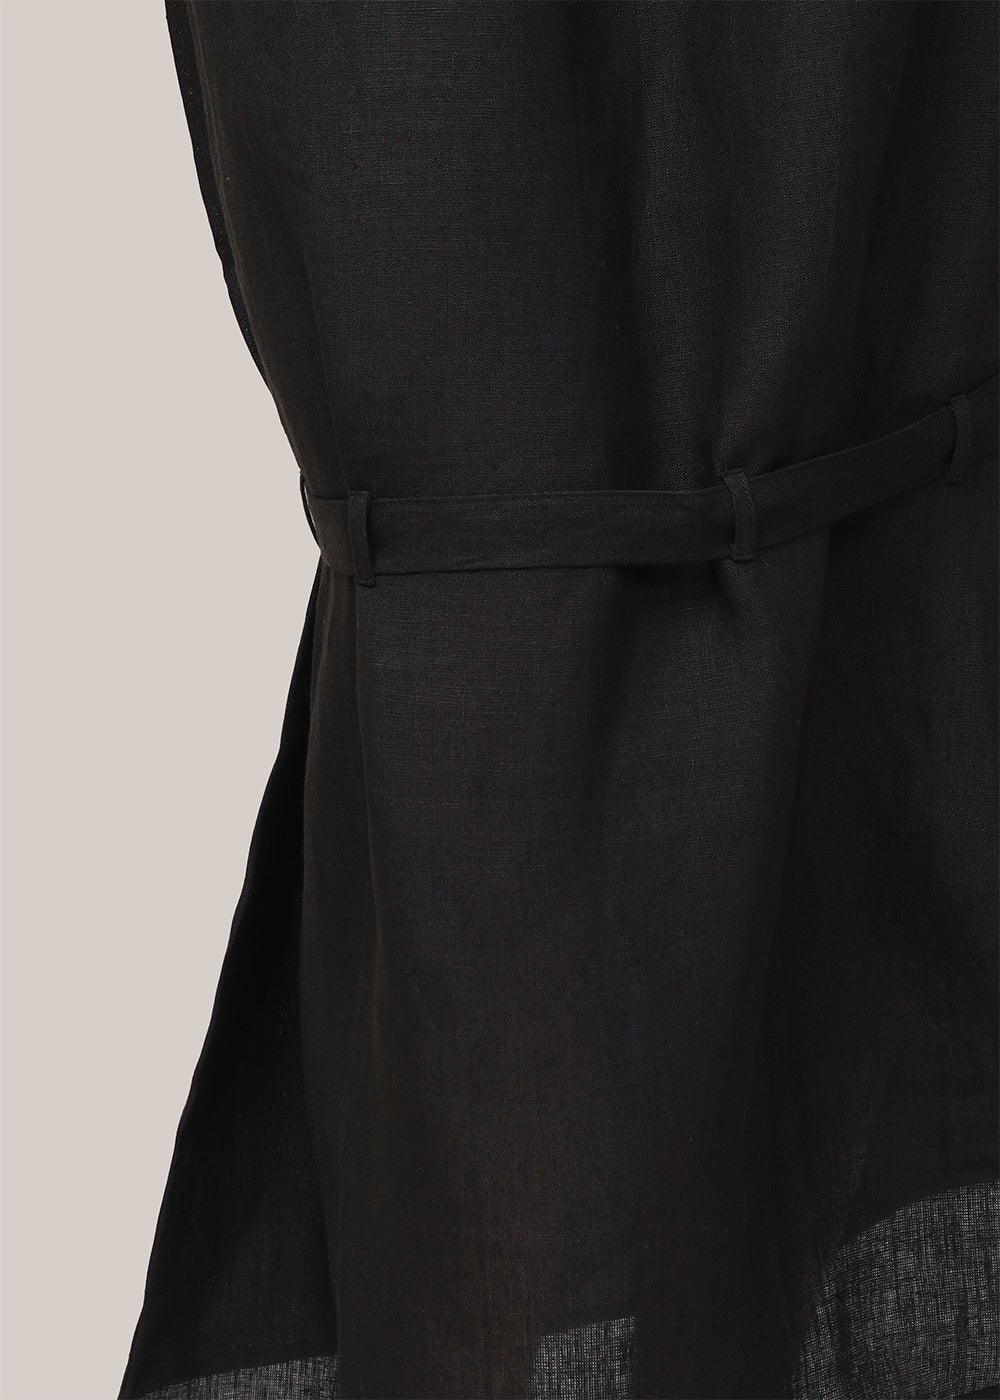 Baserange Black Leo Skirt - New Classics Studios Sustainable Ethical Fashion Canada